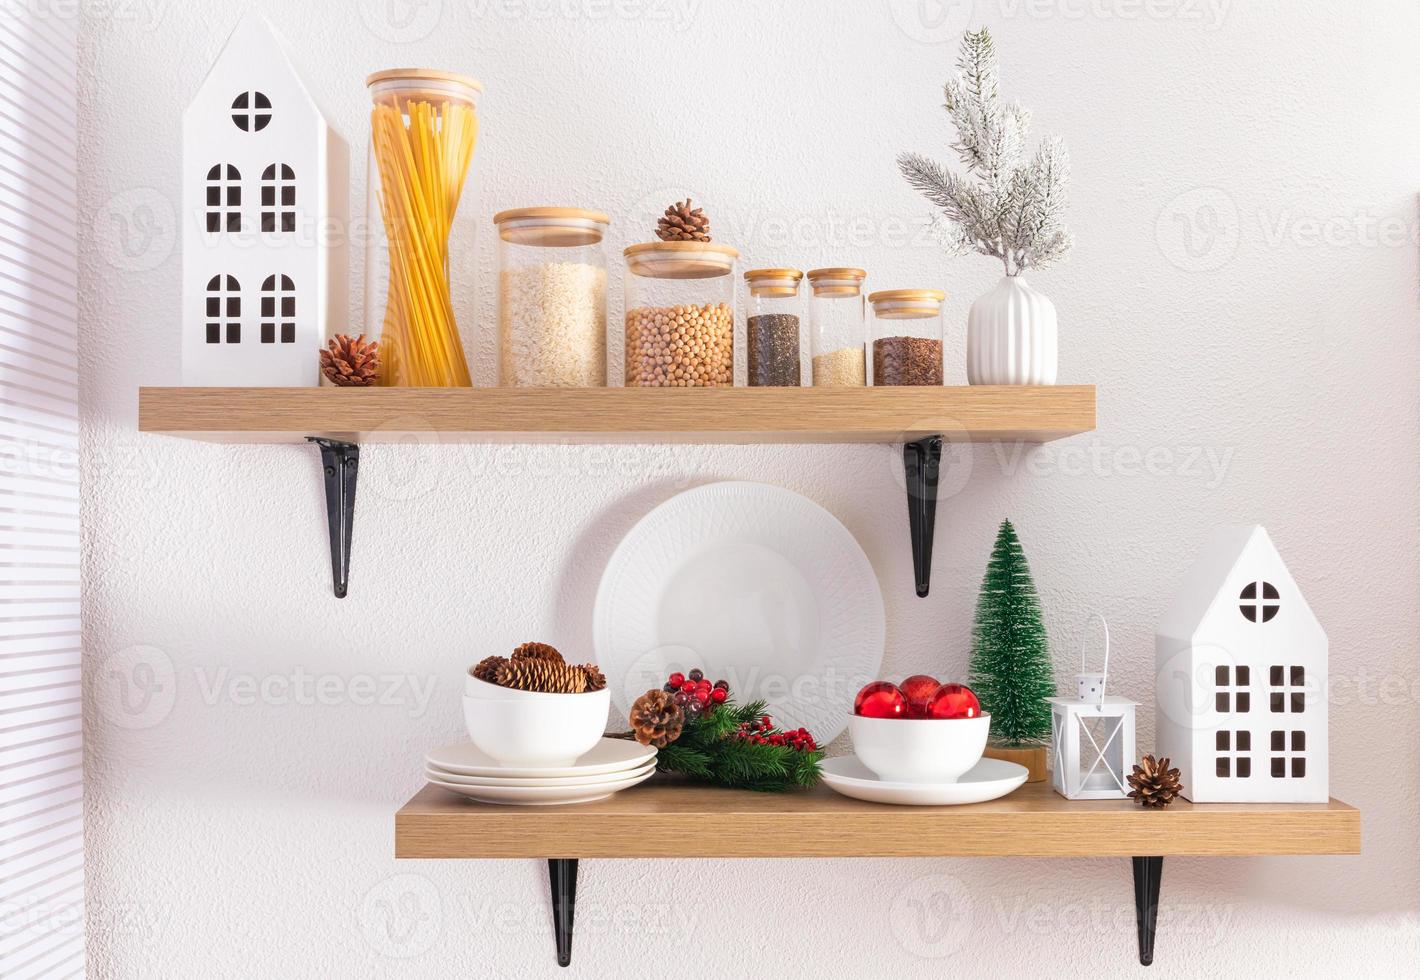 Frontansicht offener Küchenregale mit Öko-Gläsern für Schüttgüter und Weihnachtsdekoration. weiße häuser aus karton, natürliche kegel. foto